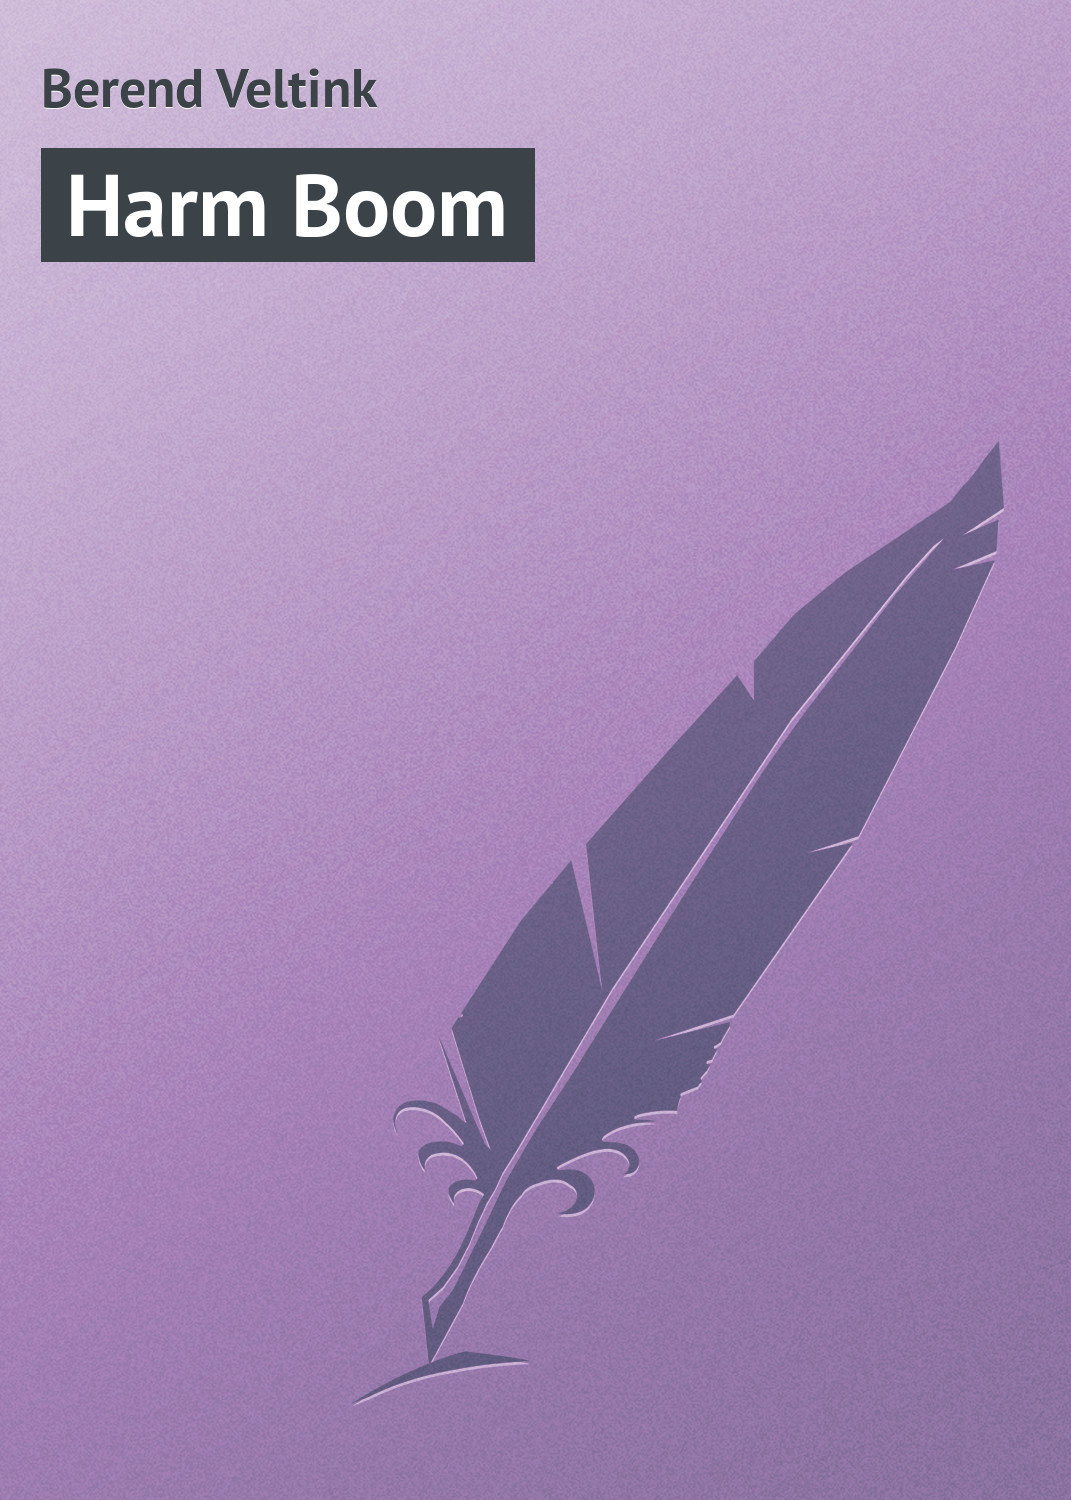 Книга Harm Boom из серии , созданная Berend Veltink, может относится к жанру Зарубежная классика, Зарубежная старинная литература. Стоимость электронной книги Harm Boom с идентификатором 21096862 составляет 5.99 руб.